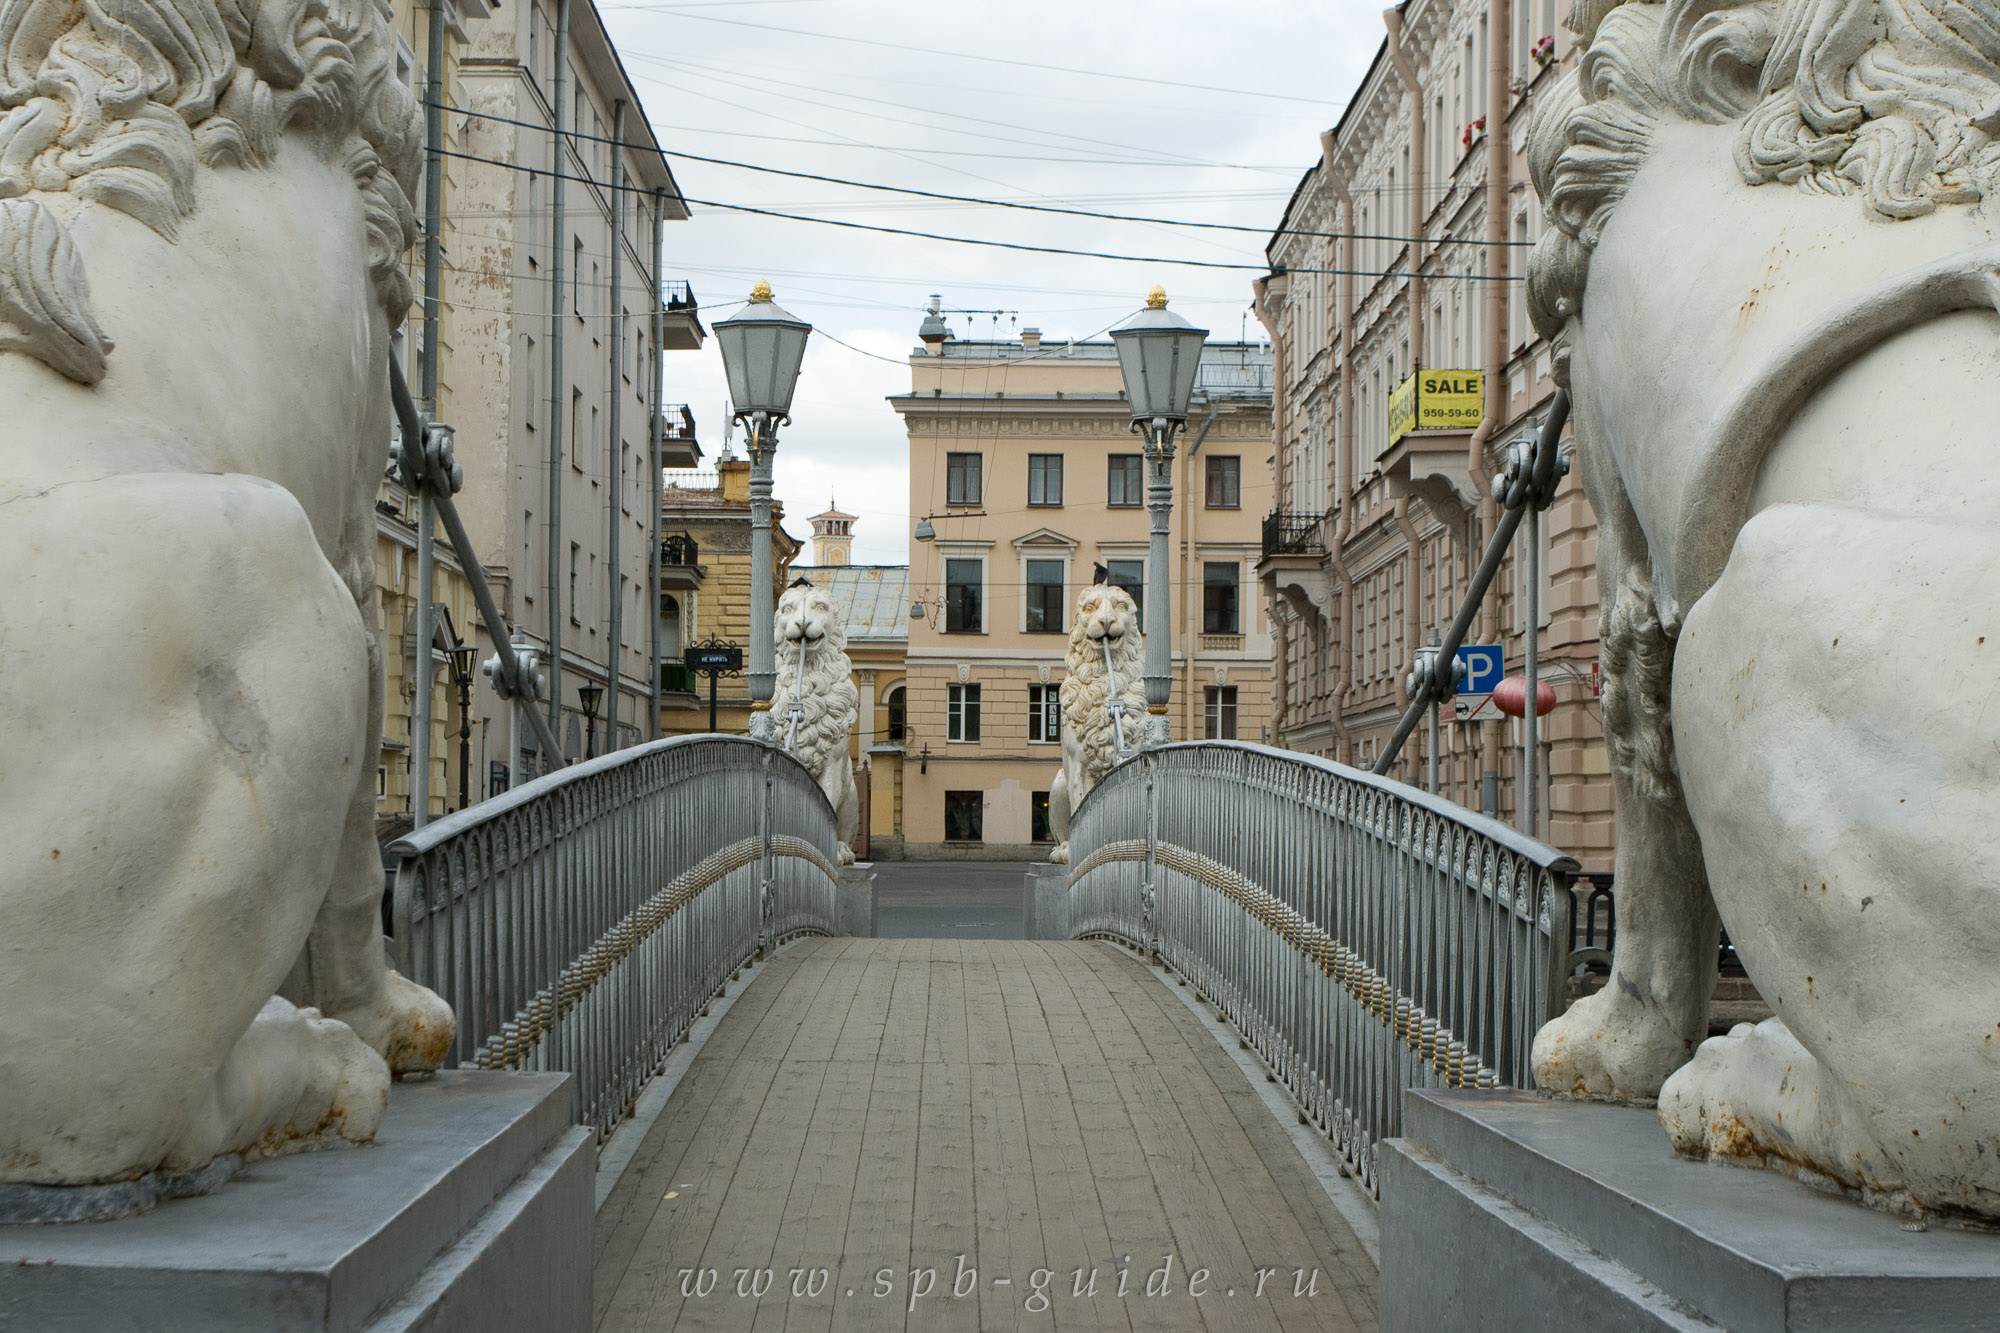 Львиный мост в санкт-петербурге: описание, история, экскурсии, точный адрес